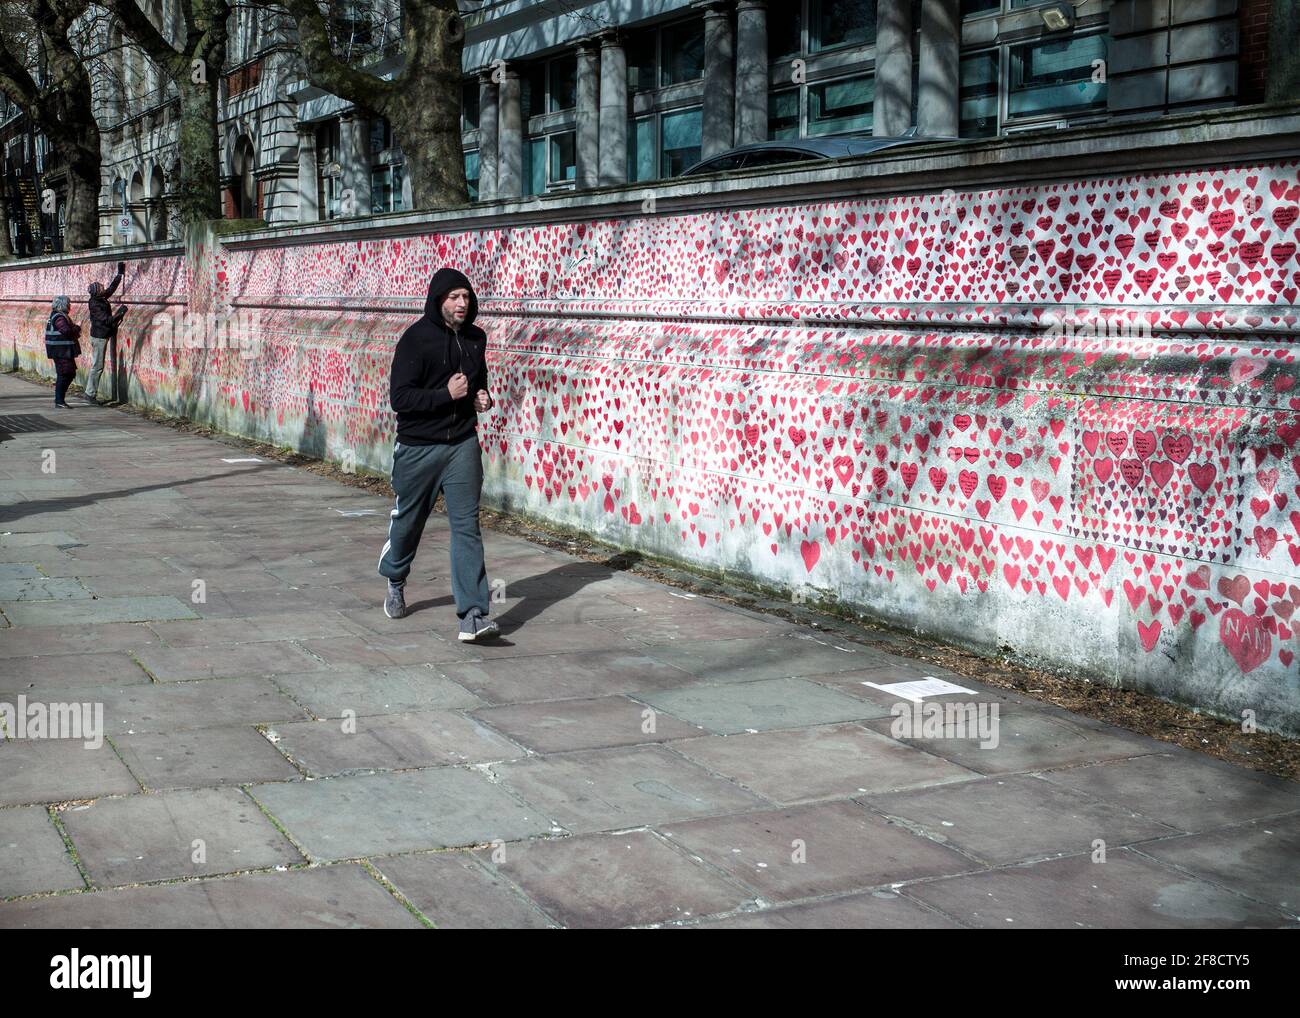 Mur national du Covid, 150,000 coeurs peints sur le mur en face des chambres du Parlement comme un mémorial pour ceux qui sont morts du coronavirus Banque D'Images